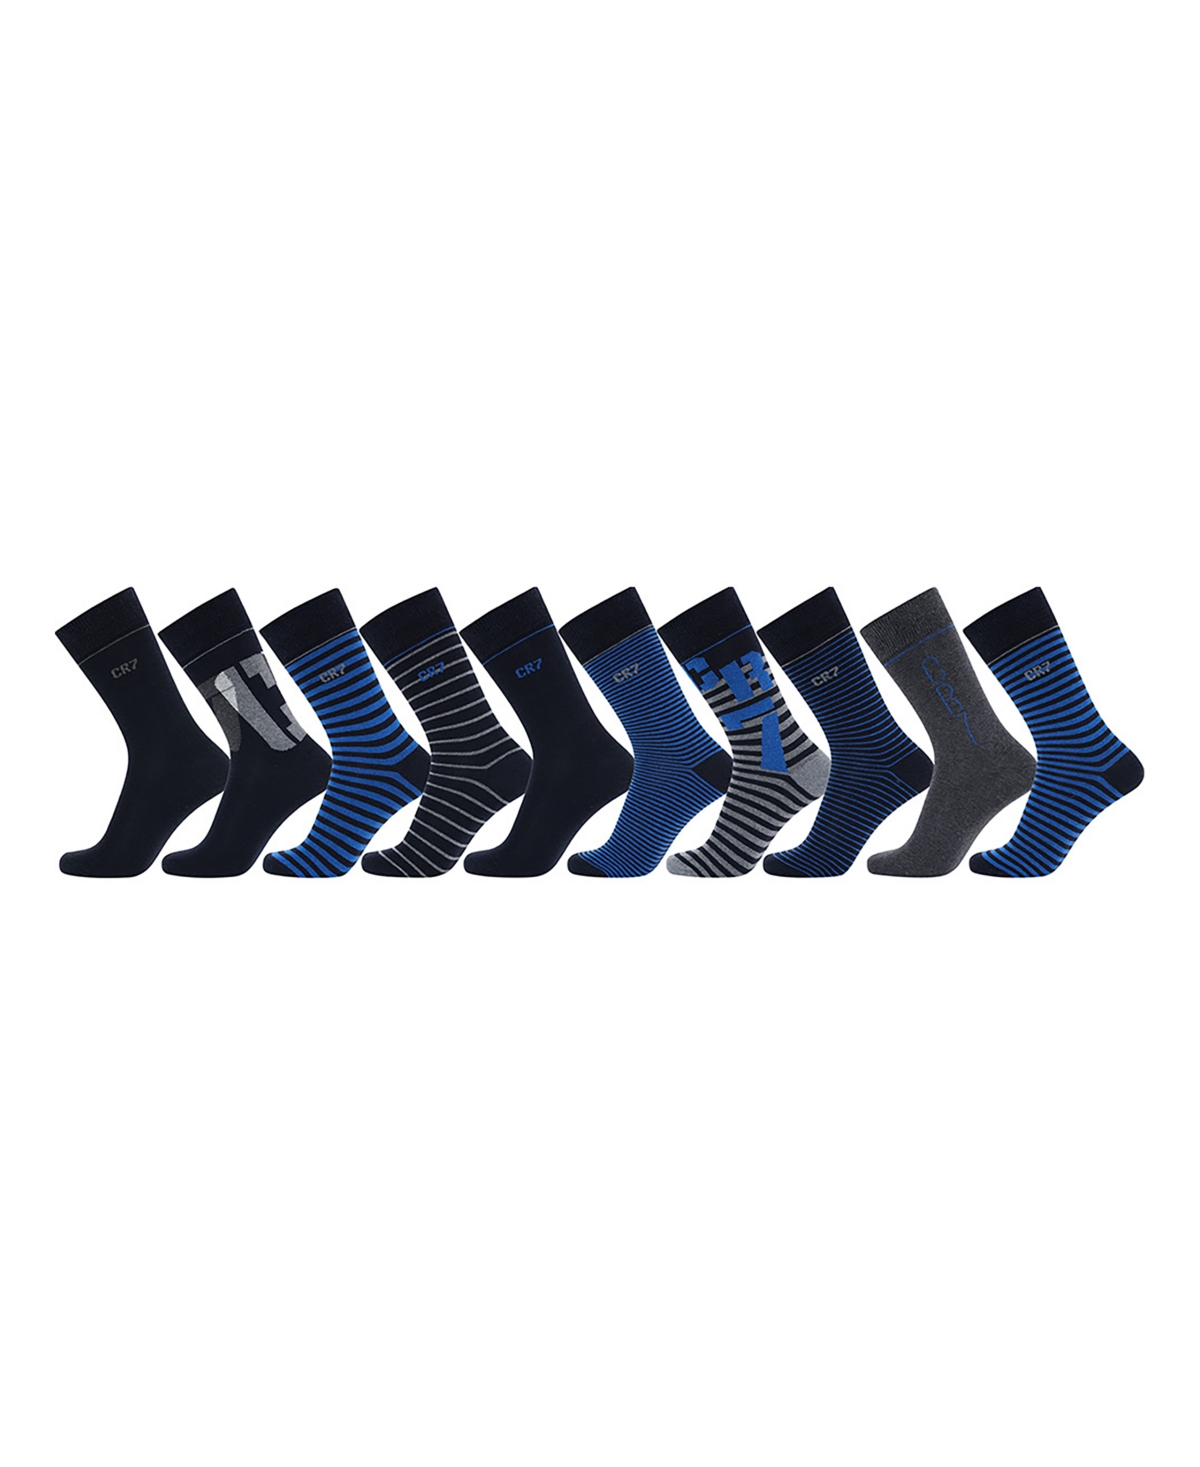 Cr7 Men's Fashion Socks, Pack Of 10 In Black,blue,gray